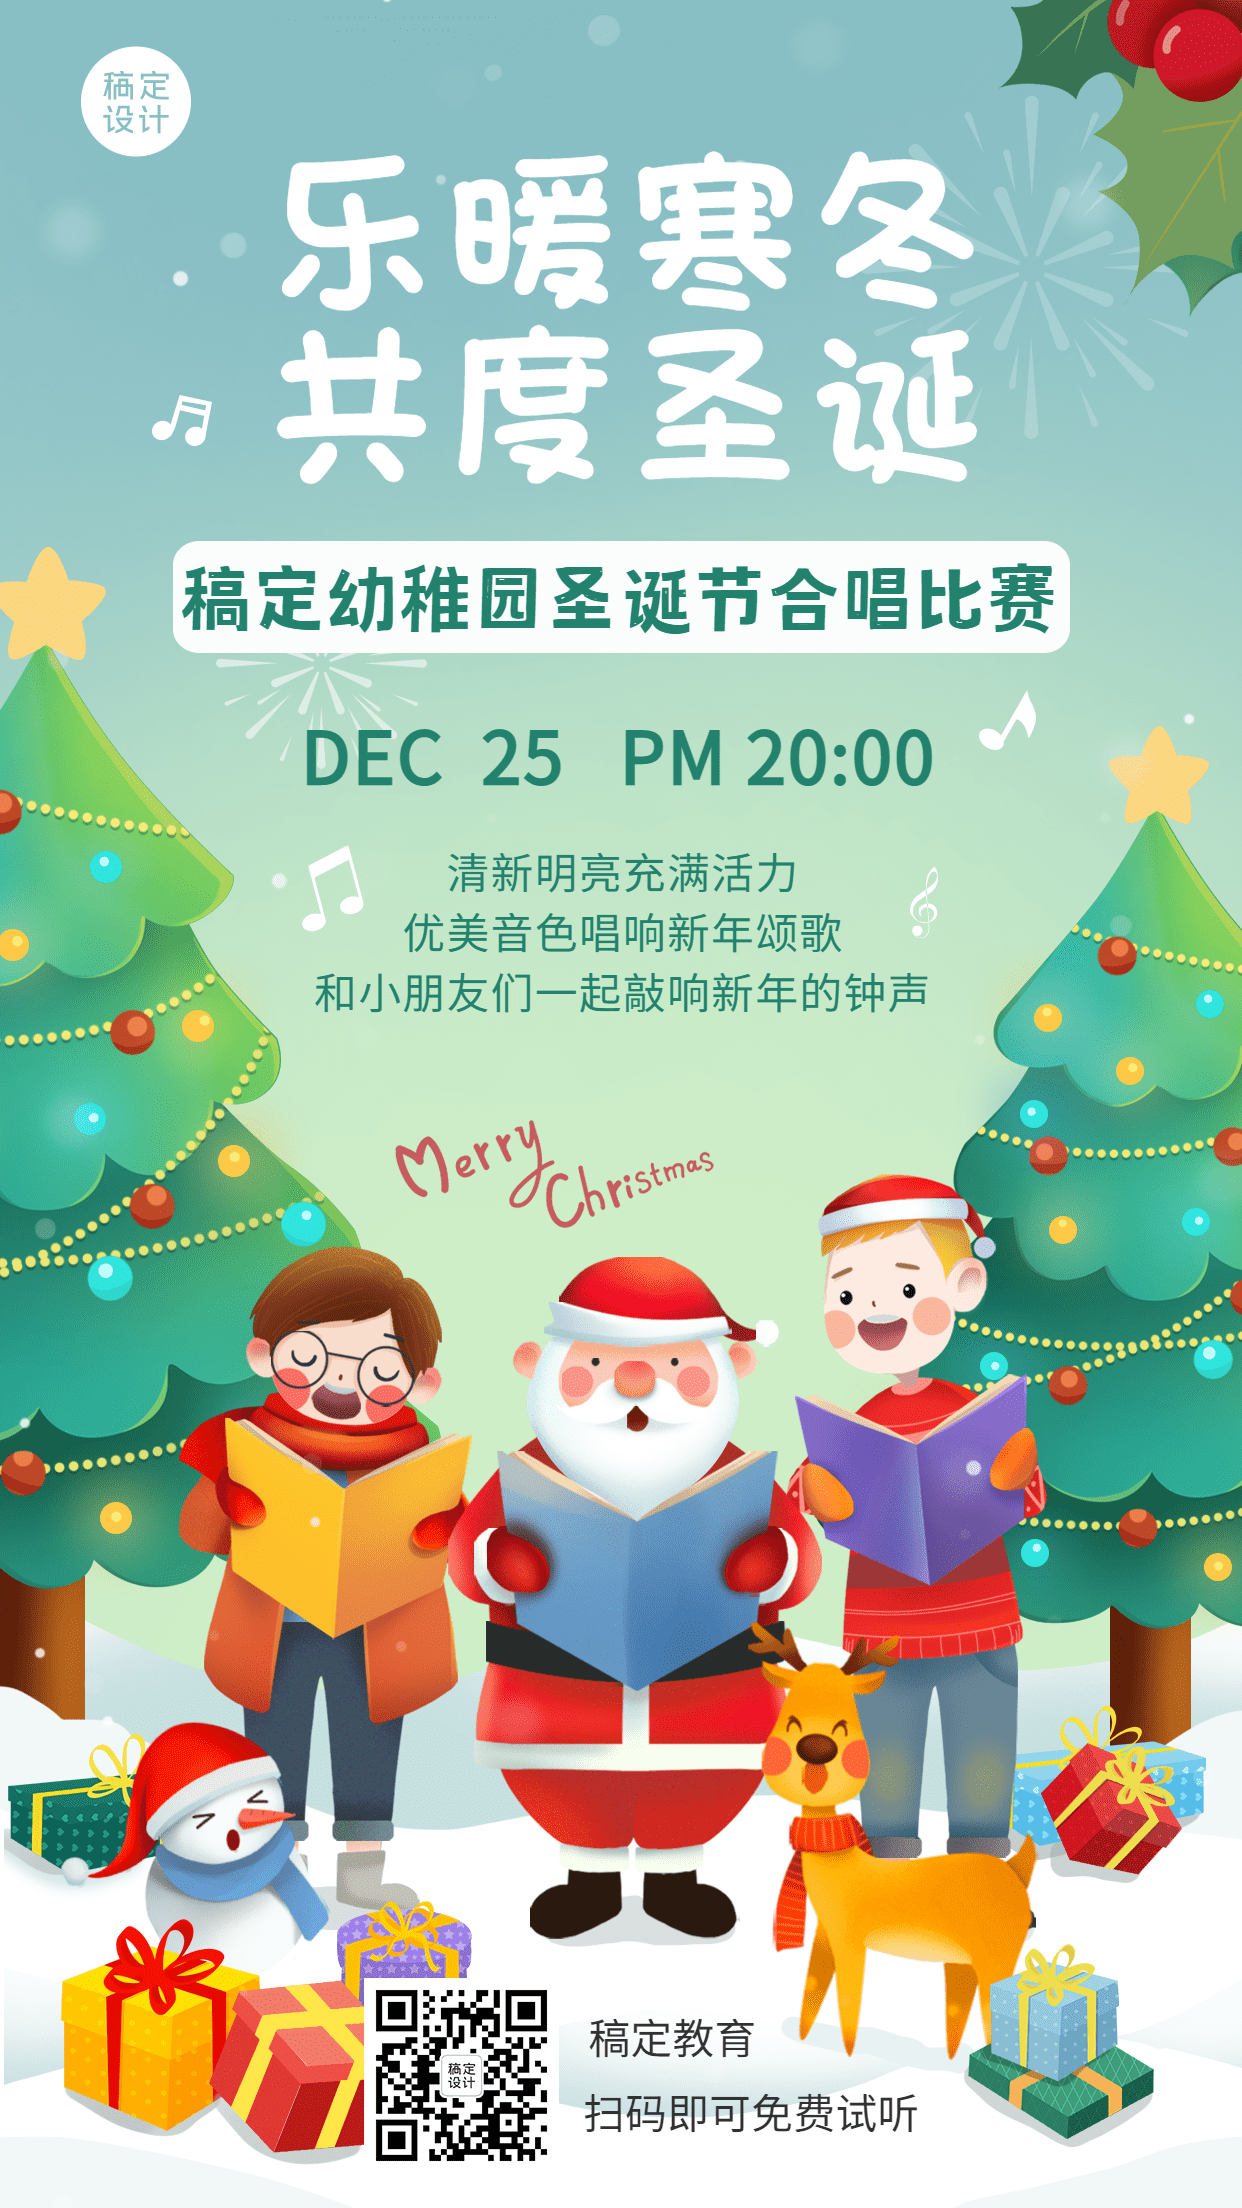 圣诞节活动幼儿园合唱比赛手绘竖版海报预览效果